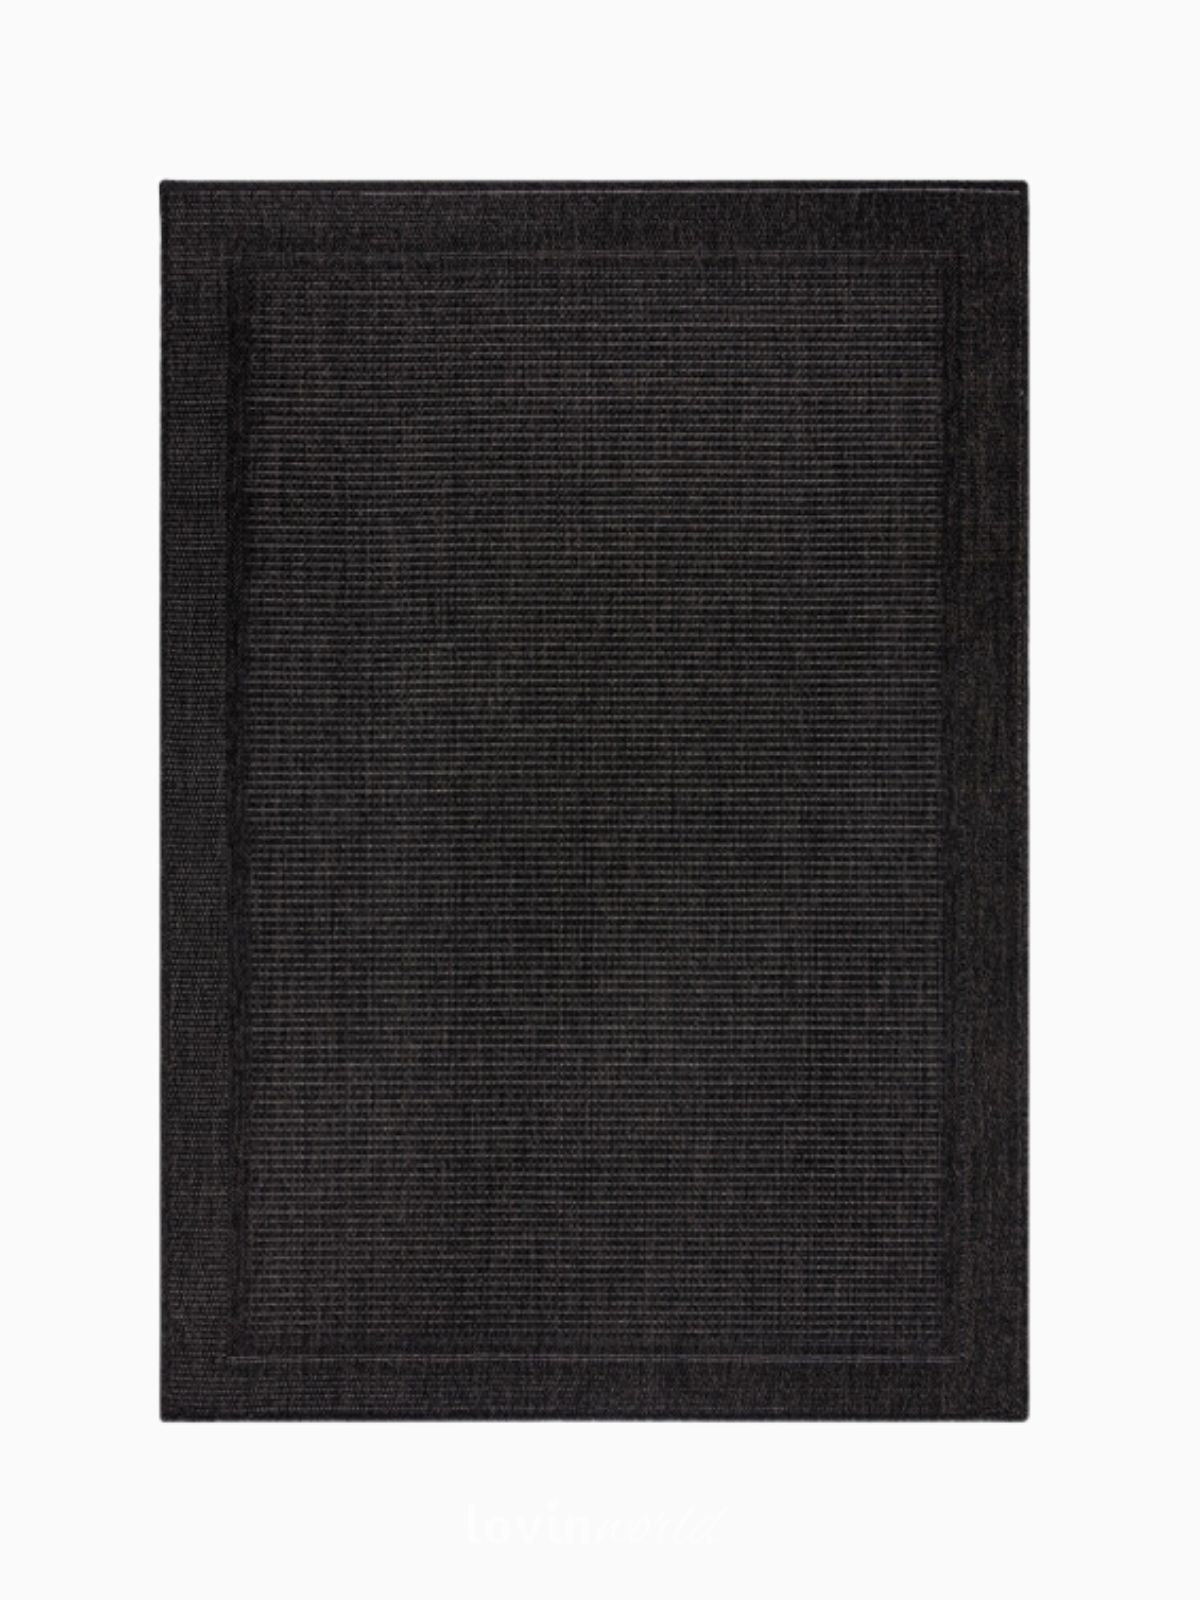 Tappeto di design Weave Outdoor in iuta, colore carbone-3